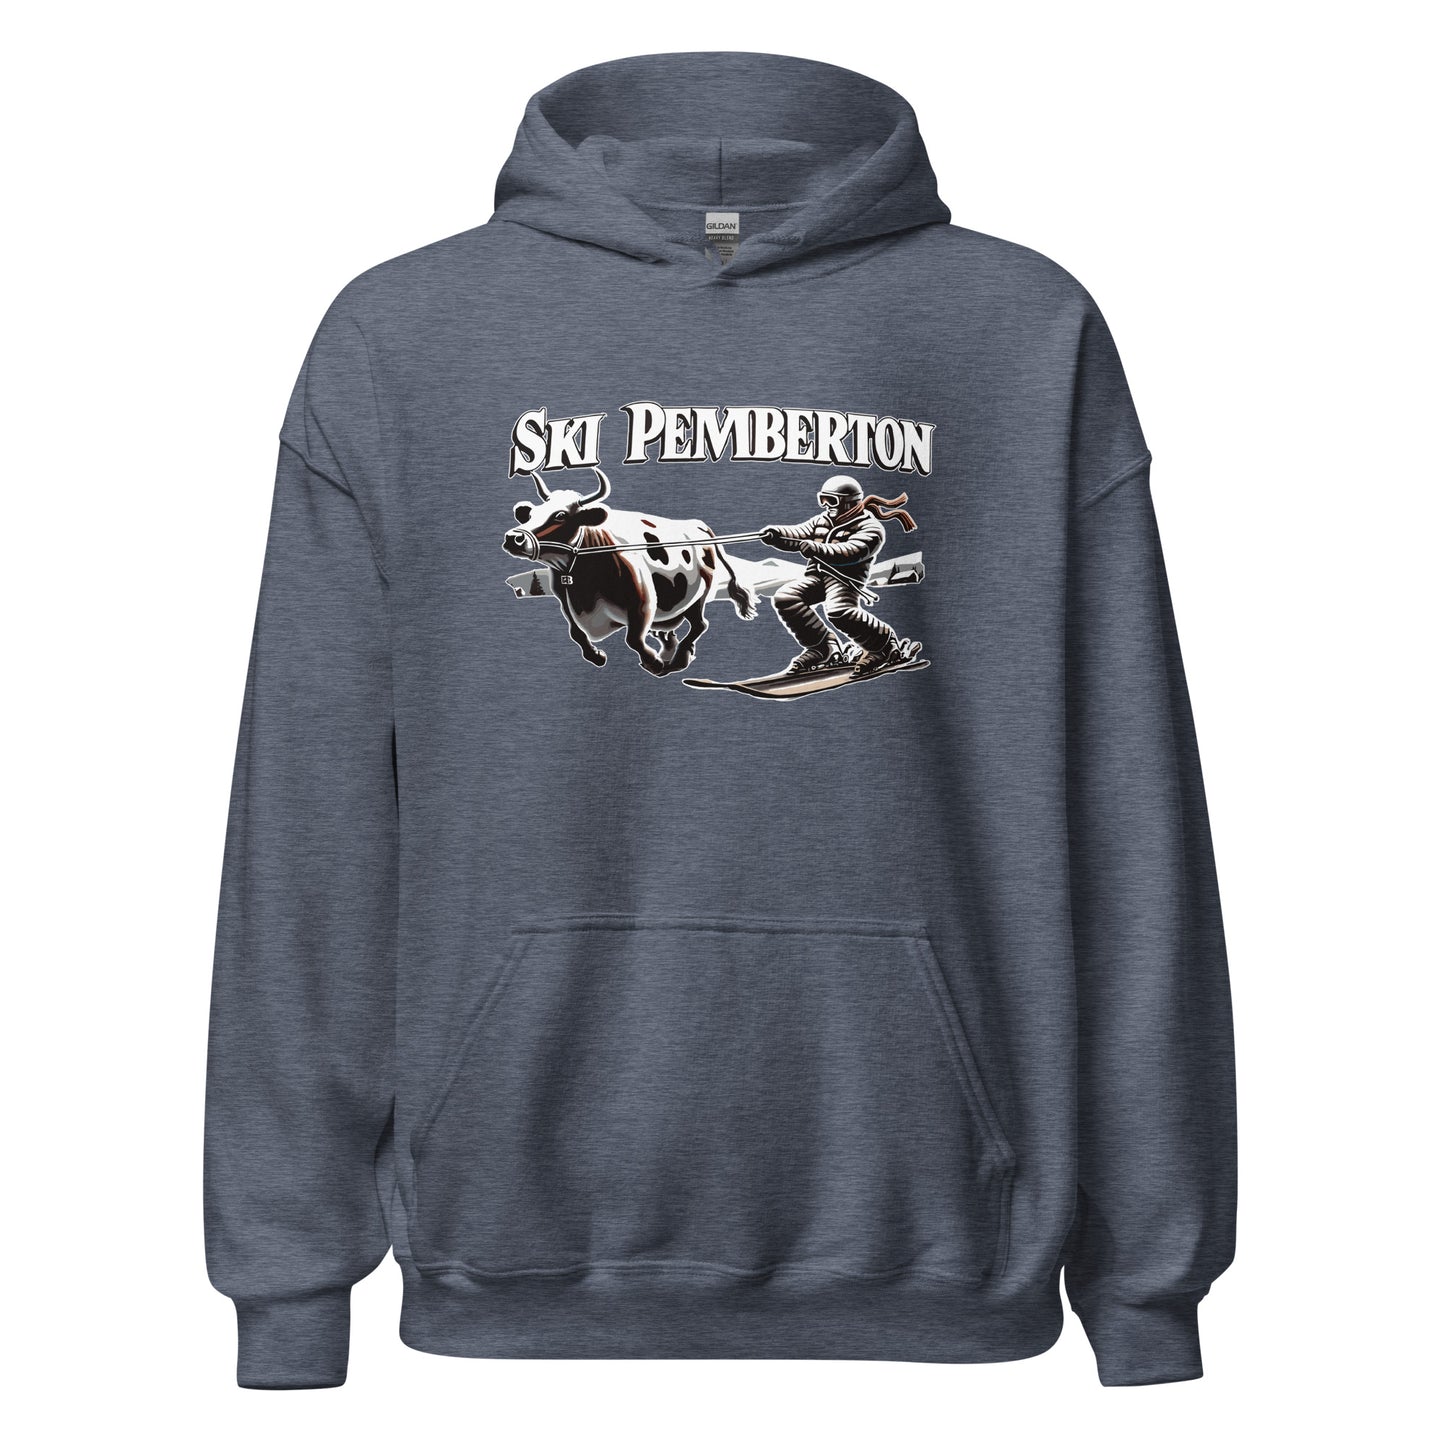 Ski Pemberton Hoodie printed by Whistler Shirts